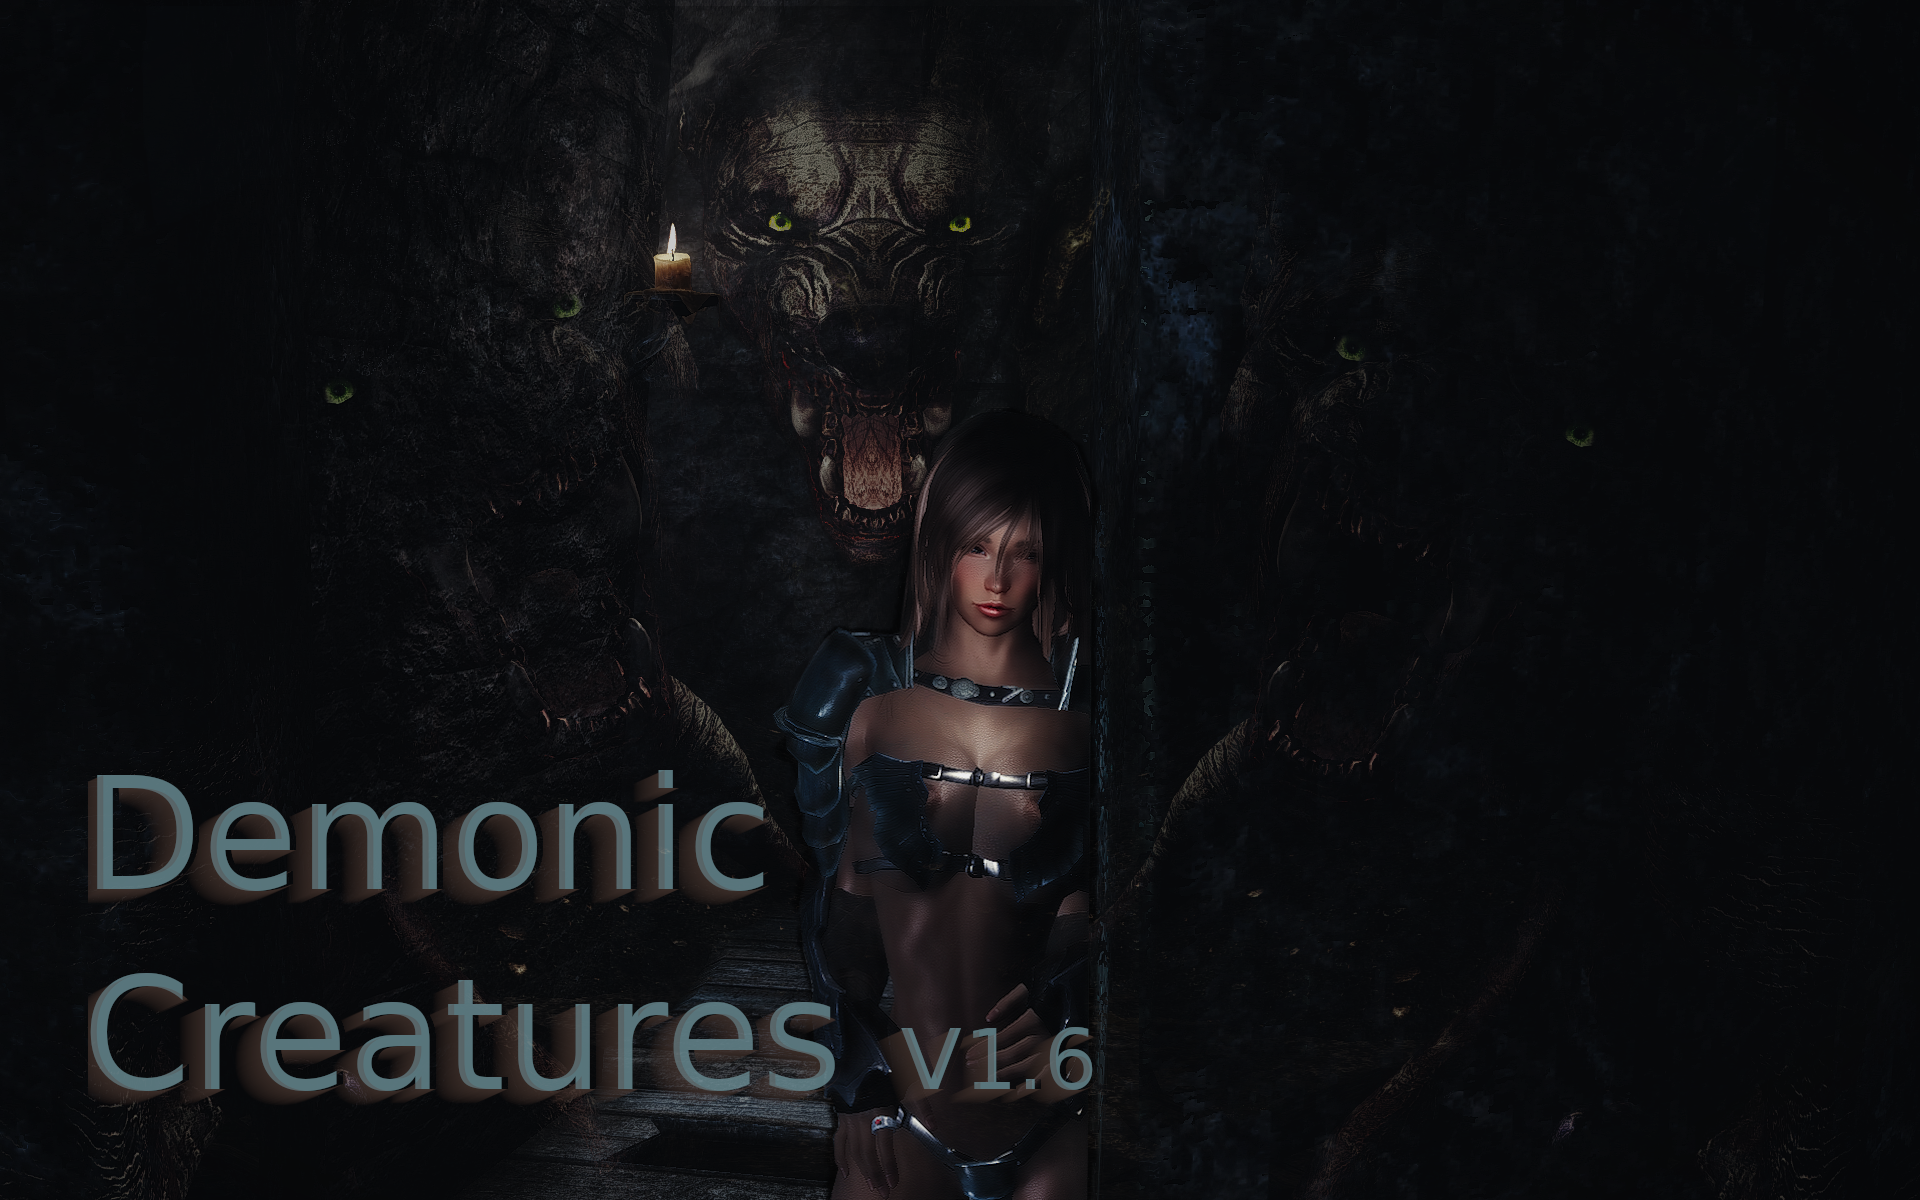 SE Demonic Creatures v1.6 - Safe for Work edition